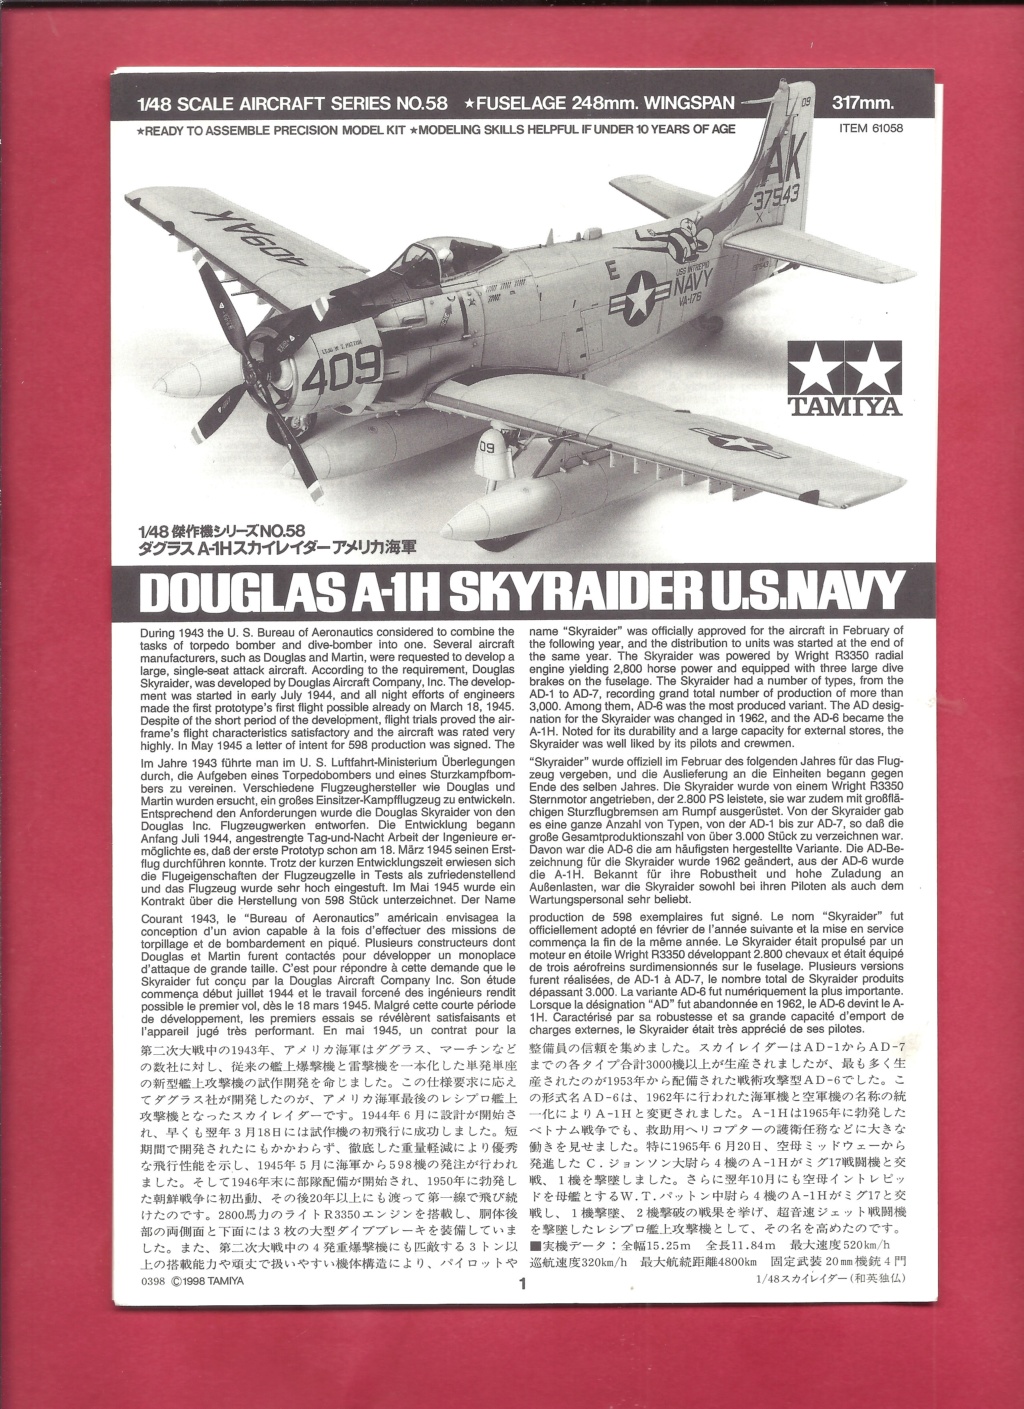 [TAMIYA] DOUGLAS A-1H SKYRAIDER 1/48ème Réf 61058F série limitée Tami1039